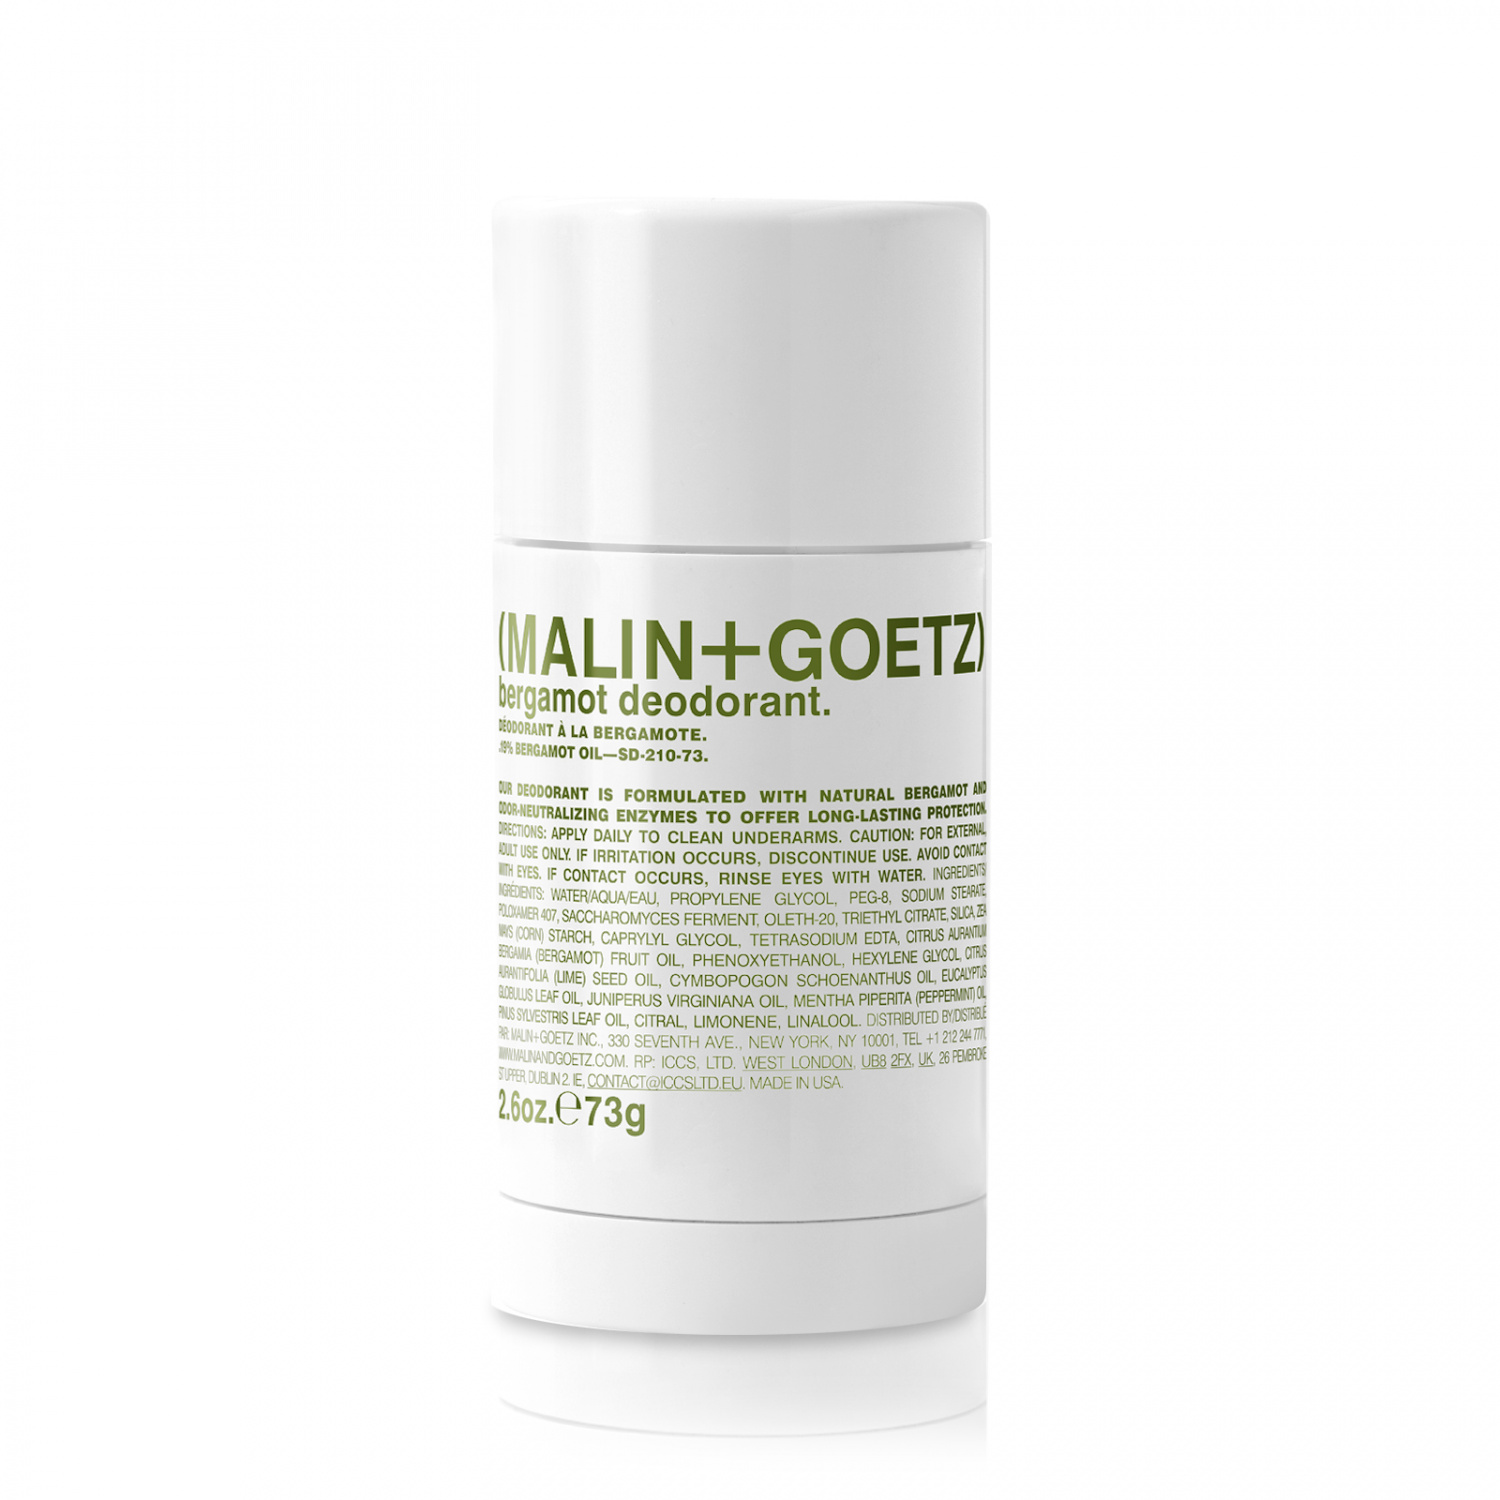 Malin+Goetz Bergamot Deodorant 73g - интернет-магазин профессиональной косметики Spadream, изображение 34605